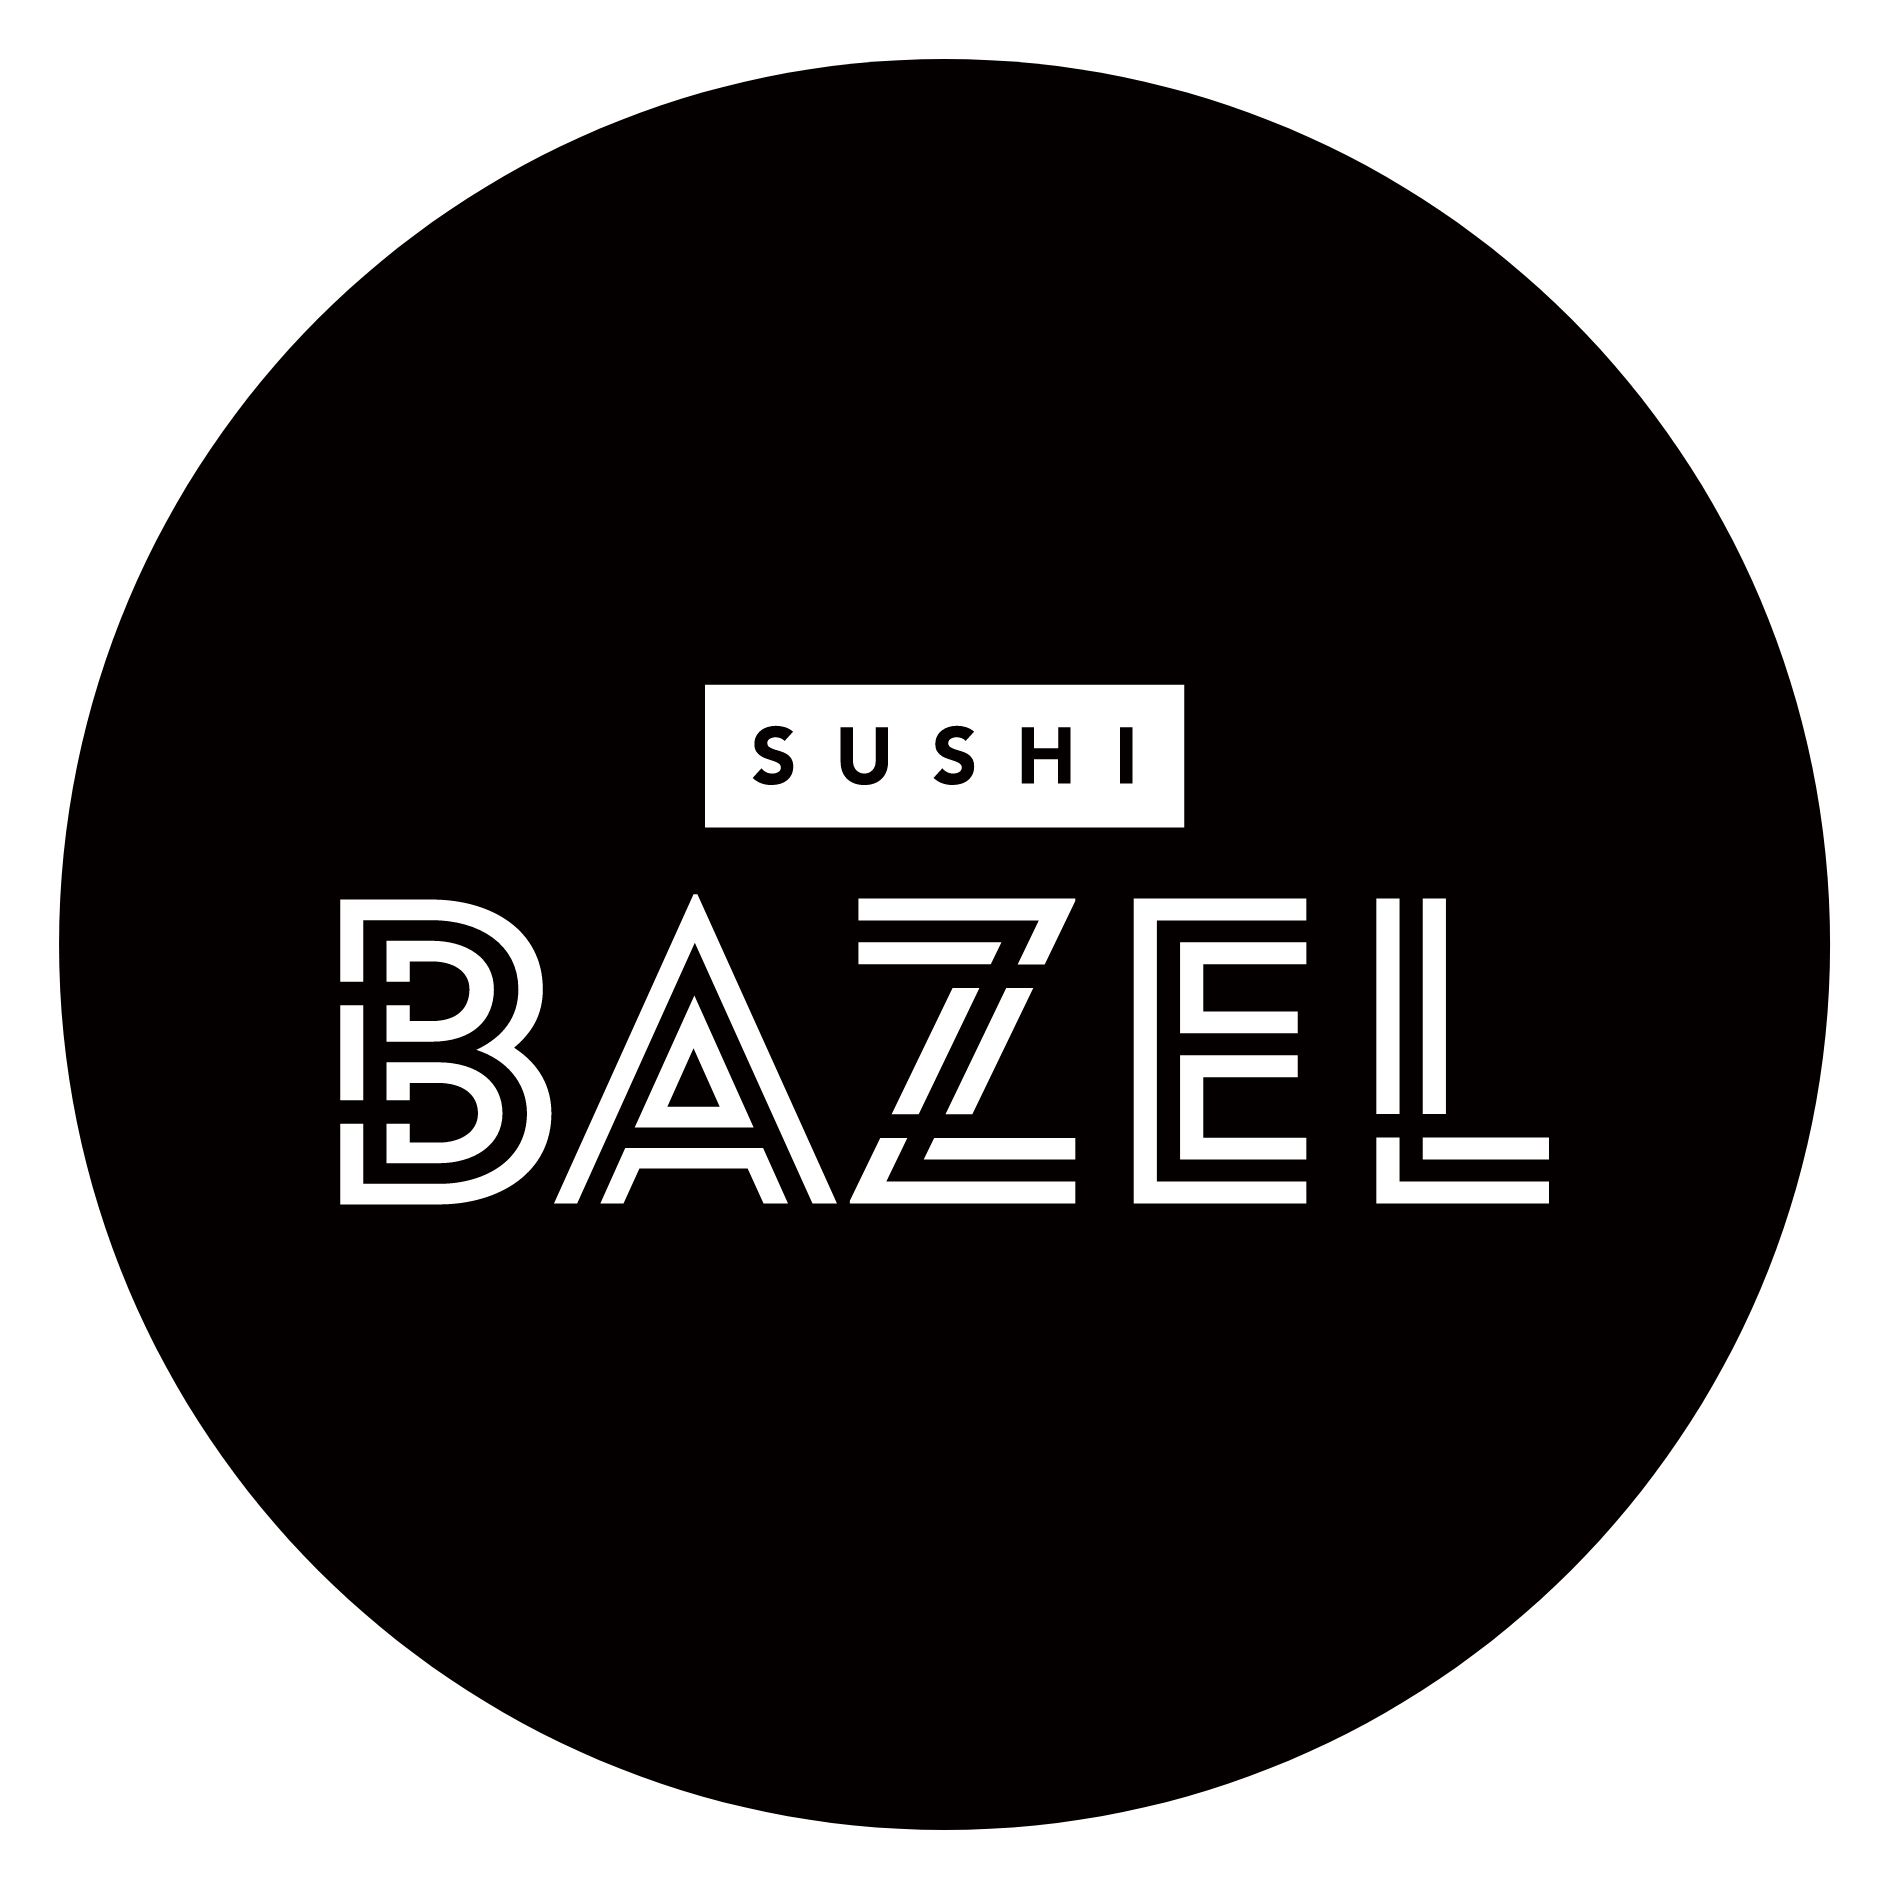 סושי בר בזל Sushi Bar Basel